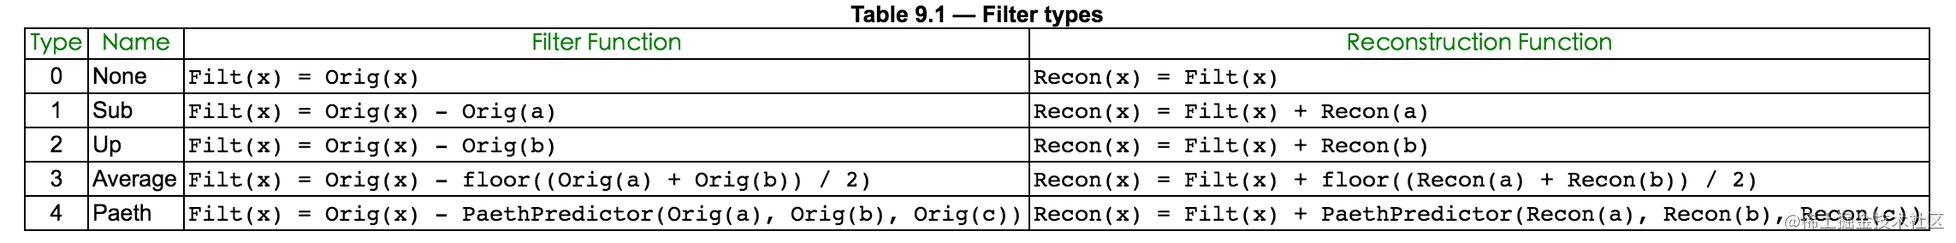 Filtering type